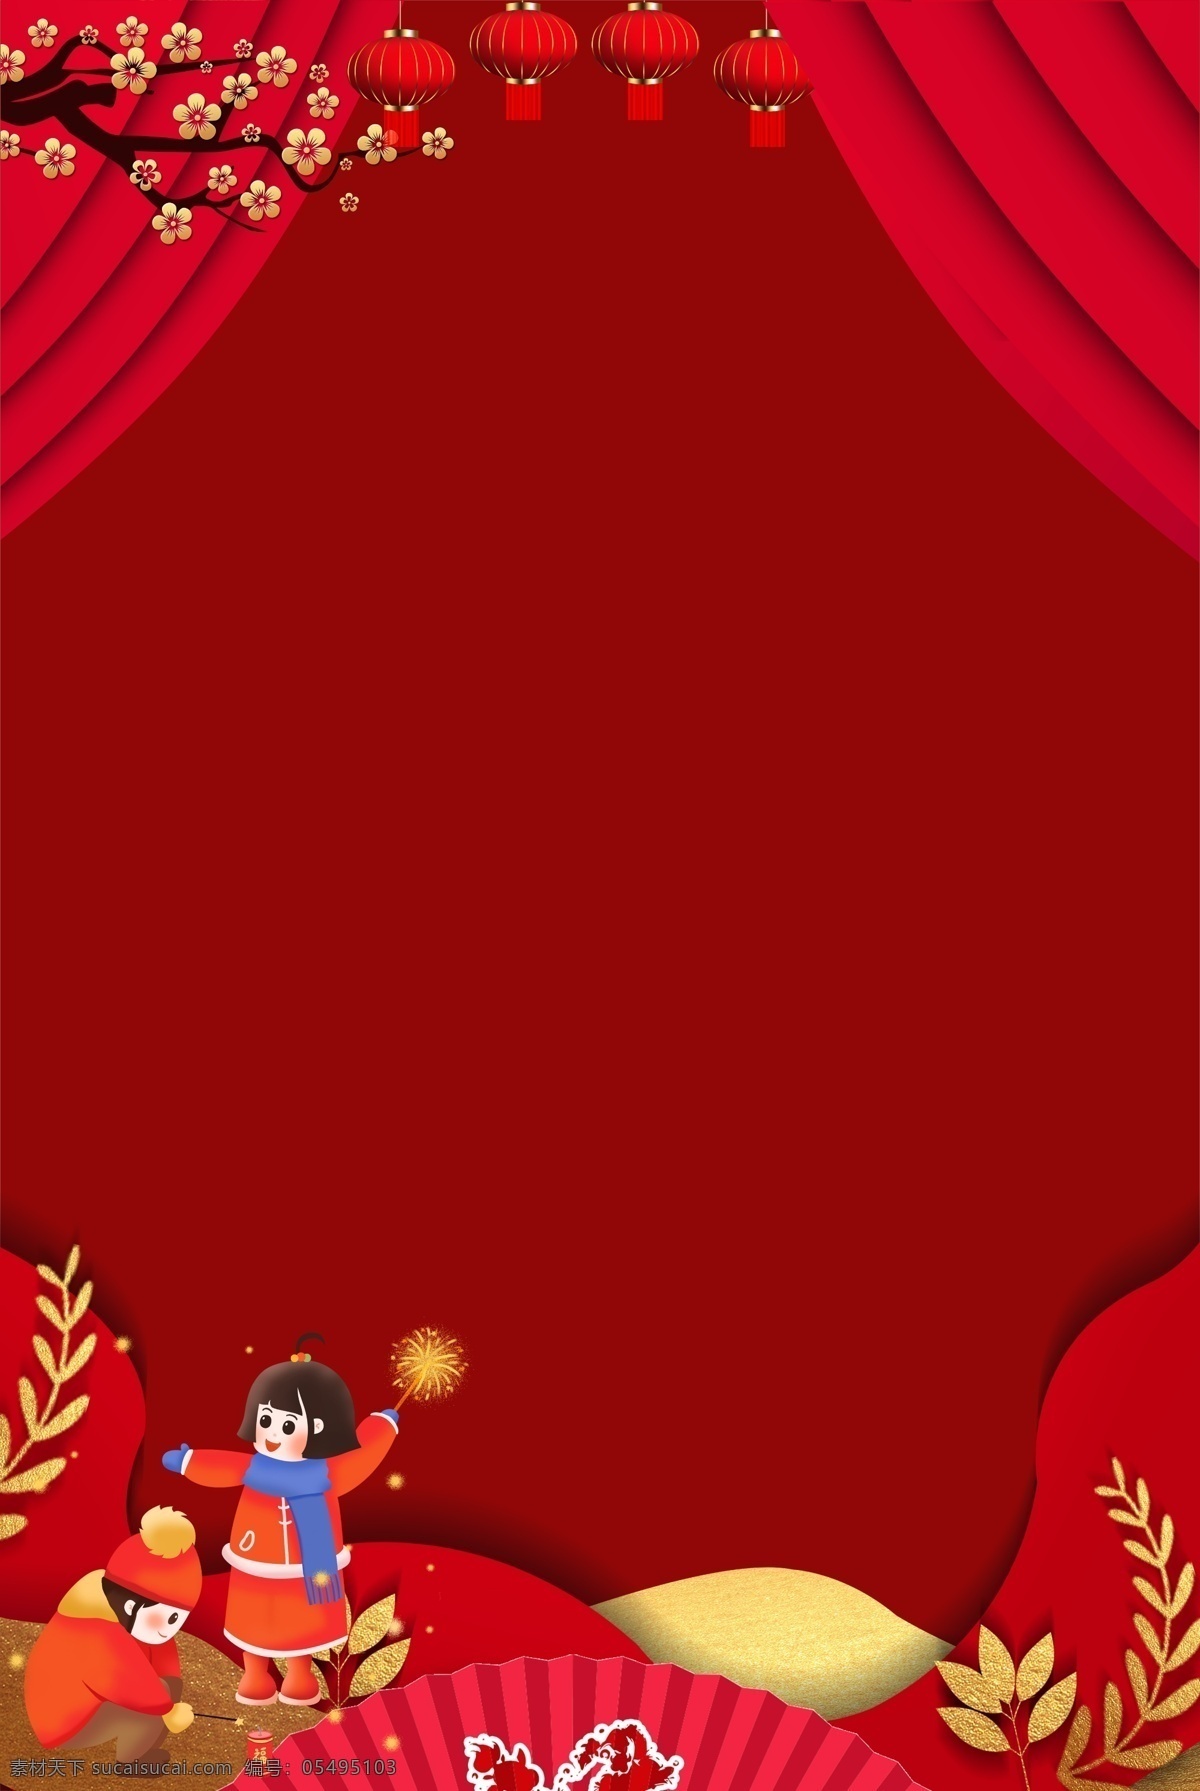 新年 红色 中 国风 海报 背景 中国风 梅花 幕布 孩童 烟花 灯笼